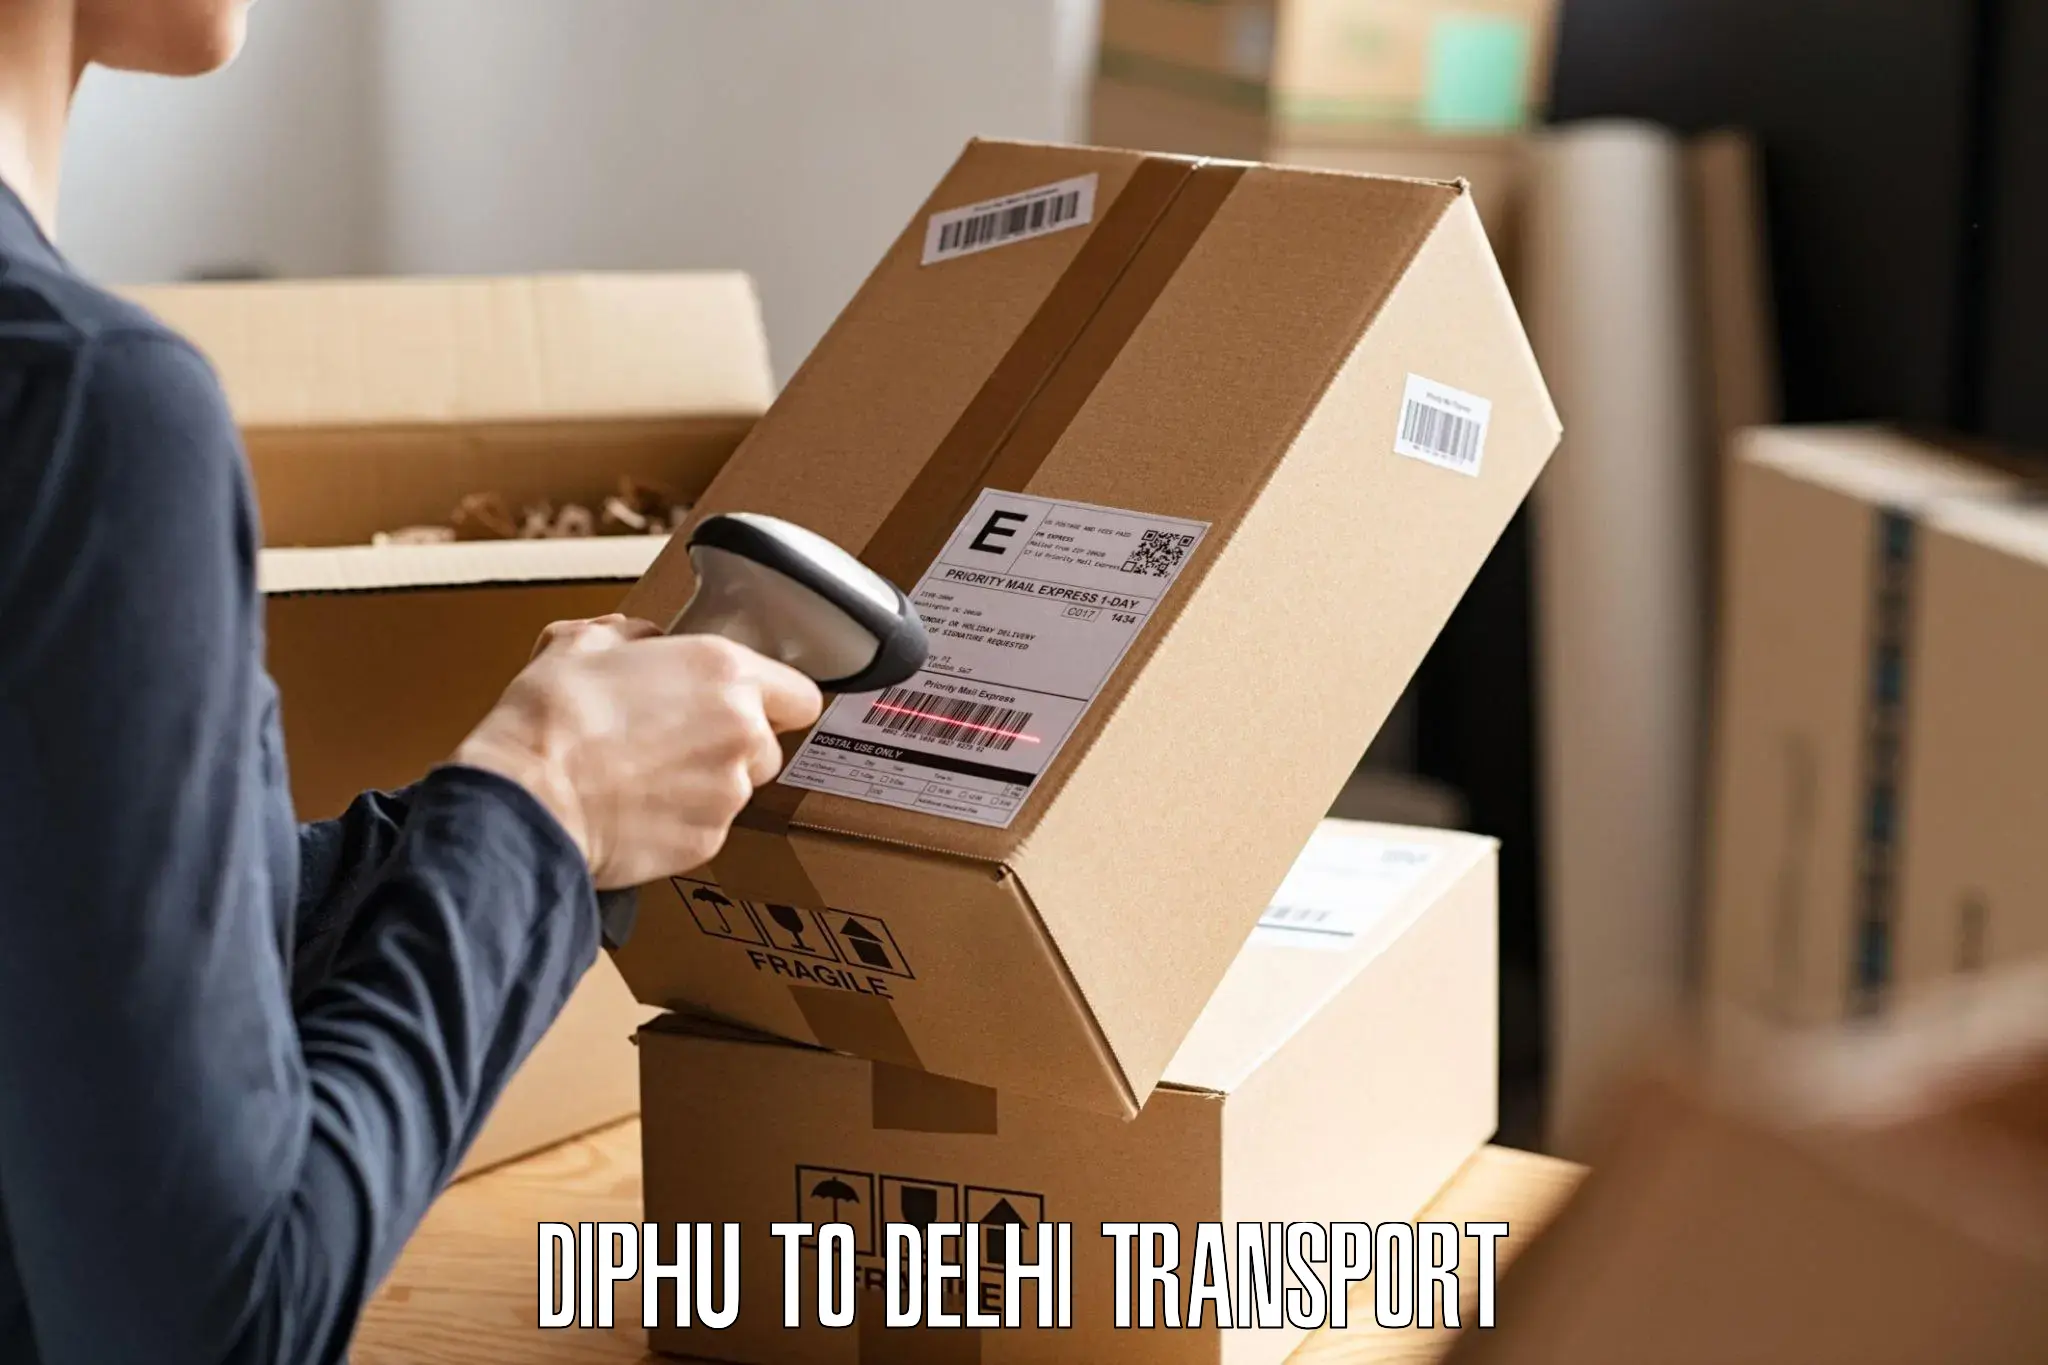 Pick up transport service Diphu to Sarojini Nagar